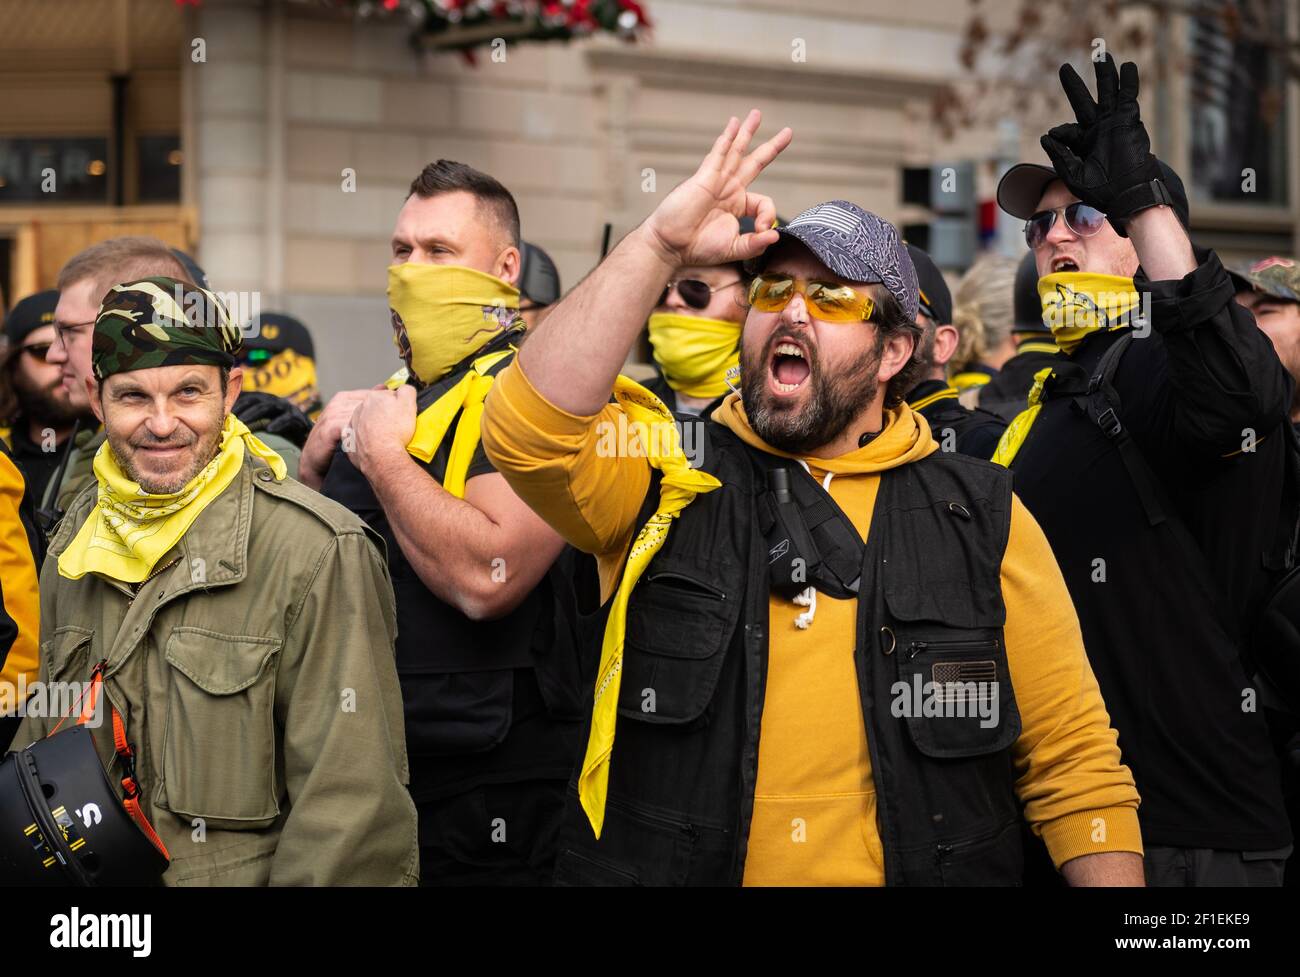 Le groupe extrémiste d'extrême droite, The Proud Boys, participe au rassemblement « Stop the Sal » le 12 décembre 2020 à Washington, DC. Banque D'Images